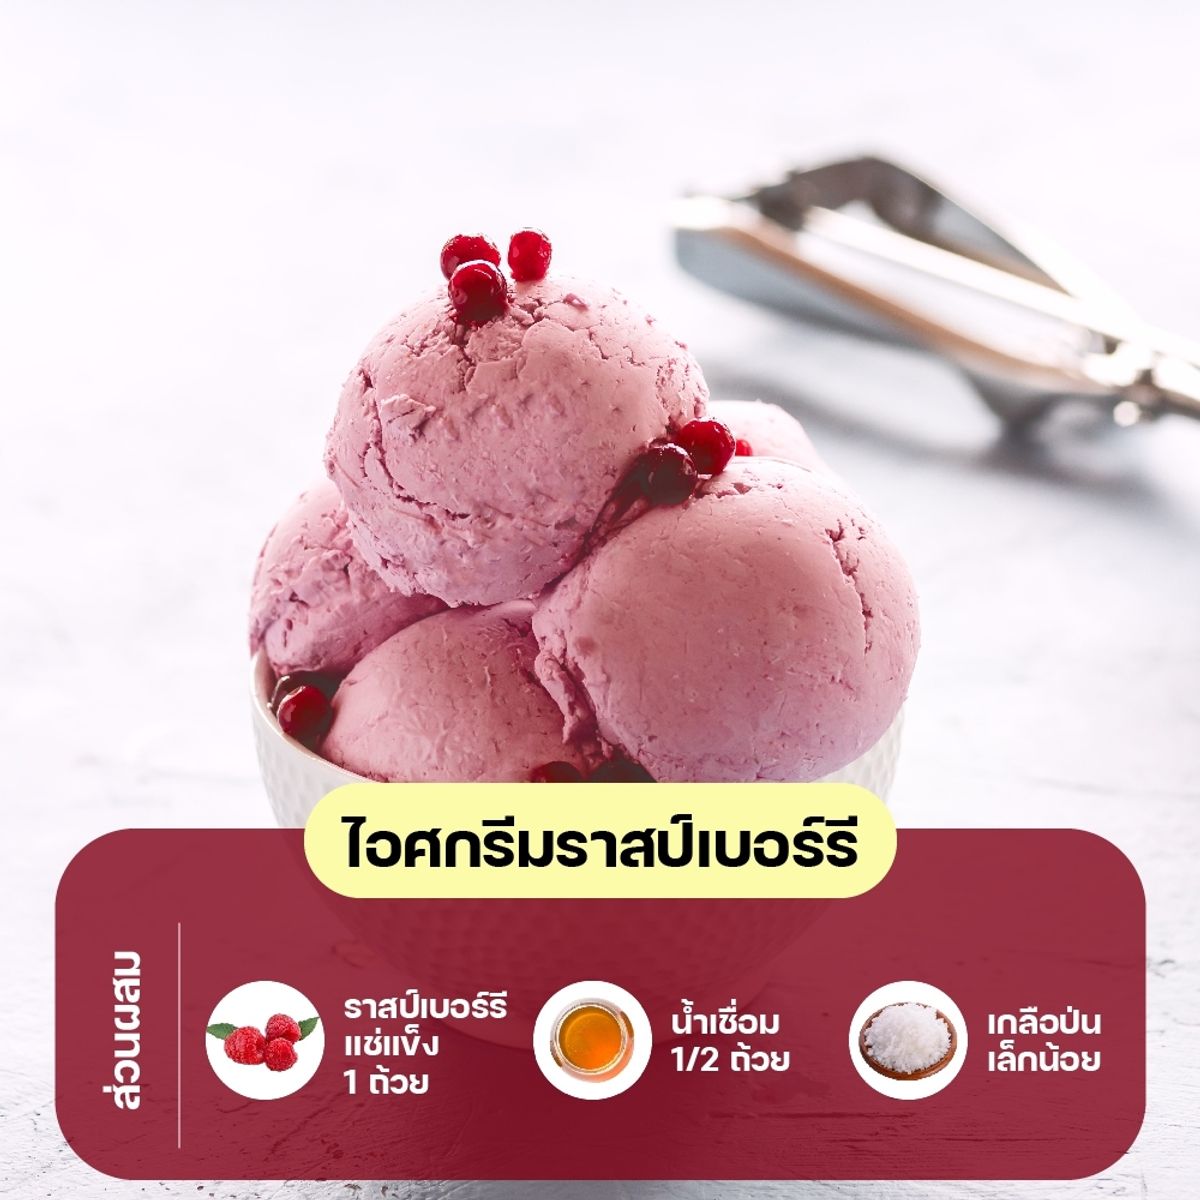 สูตรไอศกรีมผลไม้ : ไอศกรีมราสป์เบอร์รี